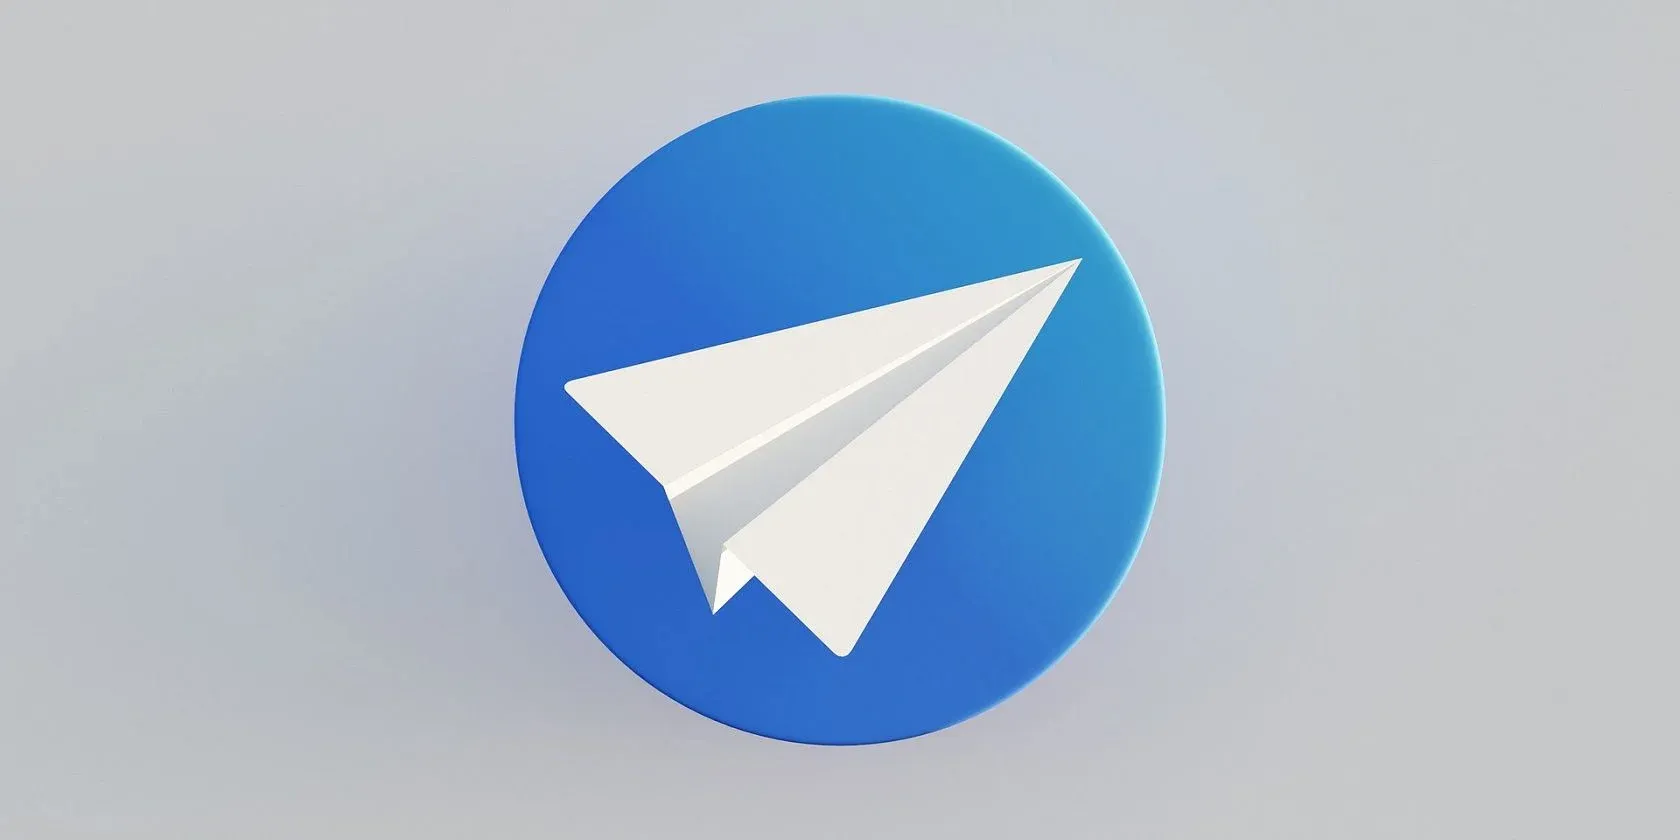 Come abilitare la verifica in due passaggi in Telegram